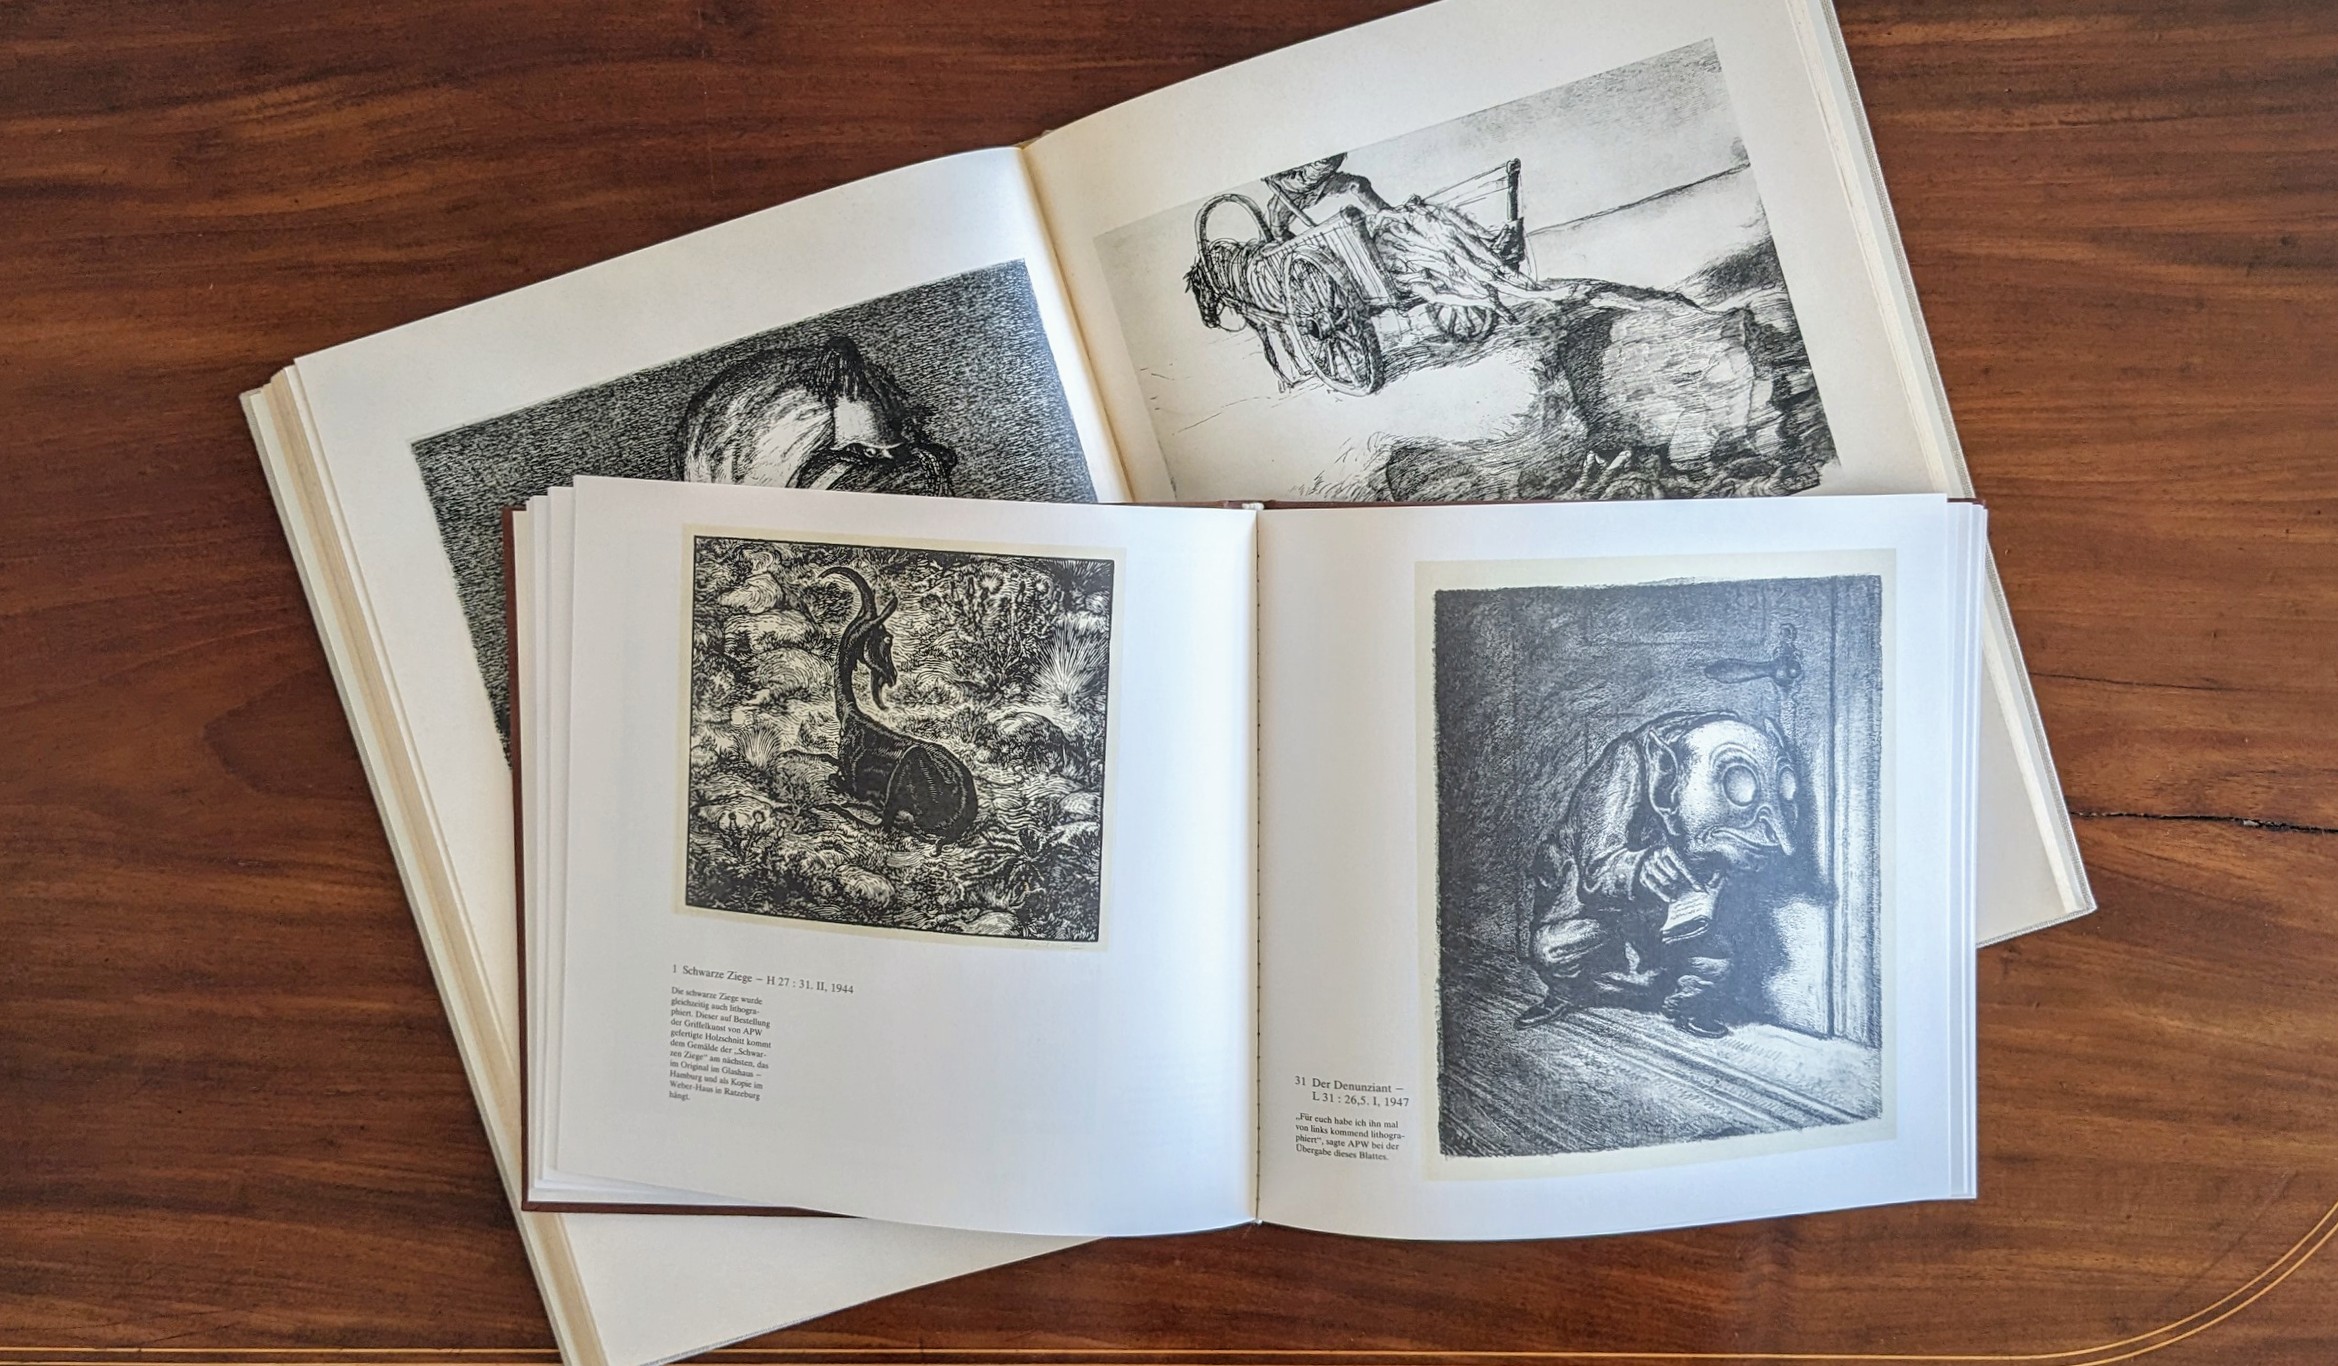 Zwei aufgeschlagene Kataloge mit Bildern von A. Paul Weber auf einem Tisch.